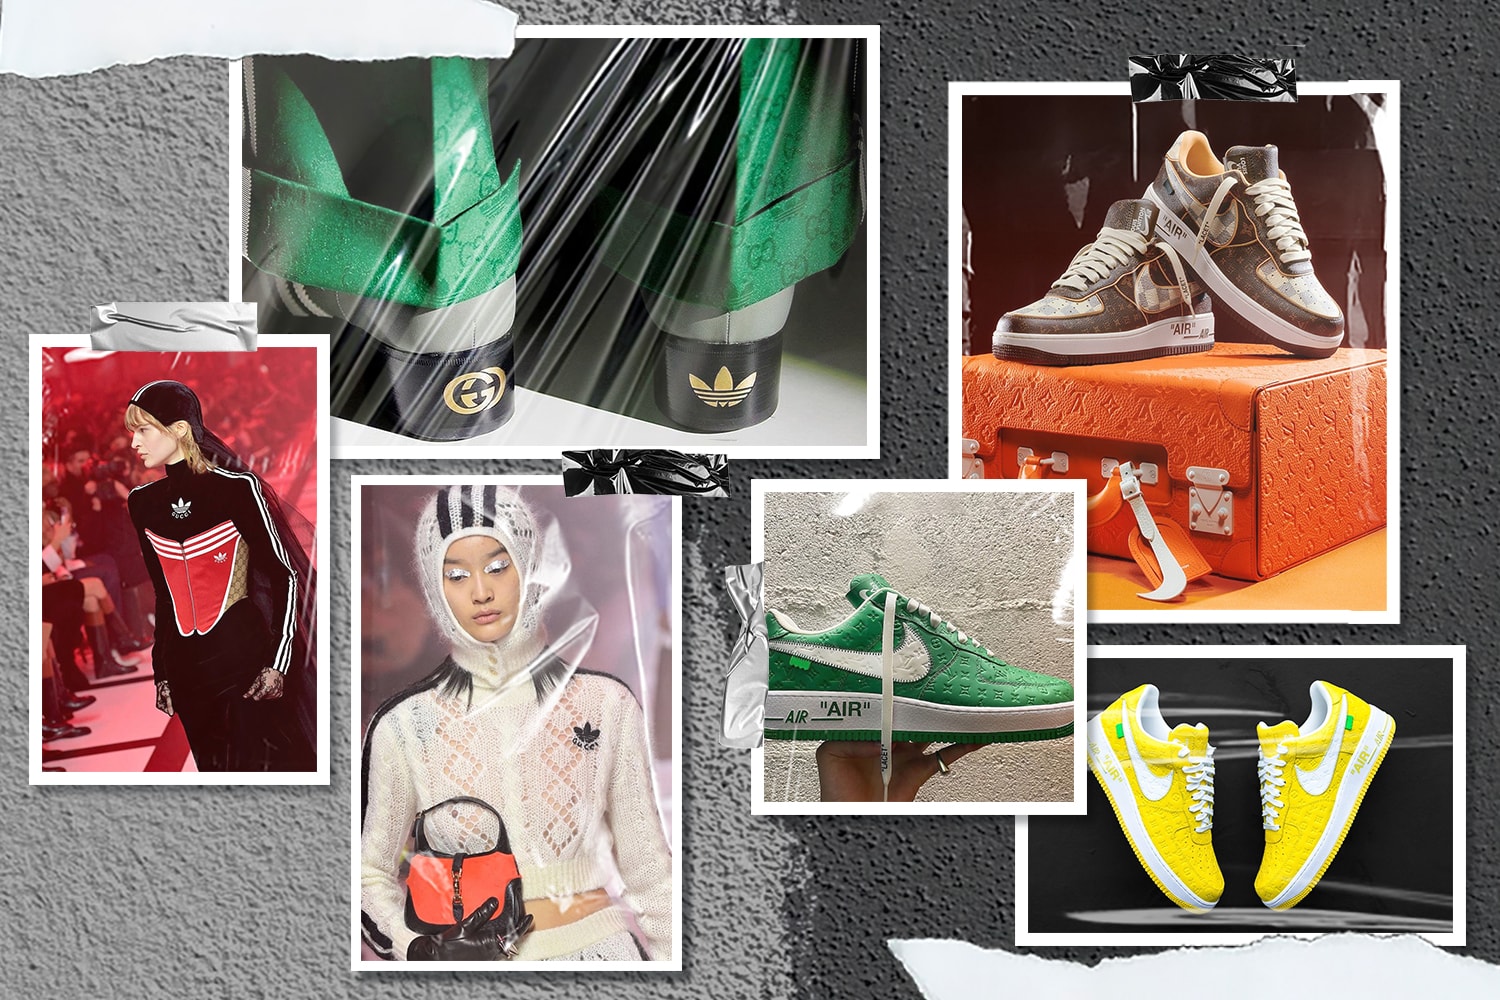 多角度对比 Gucci x adidas 与 Louis Vuitton x Nike｜时装屋与运动品牌联名新纪元